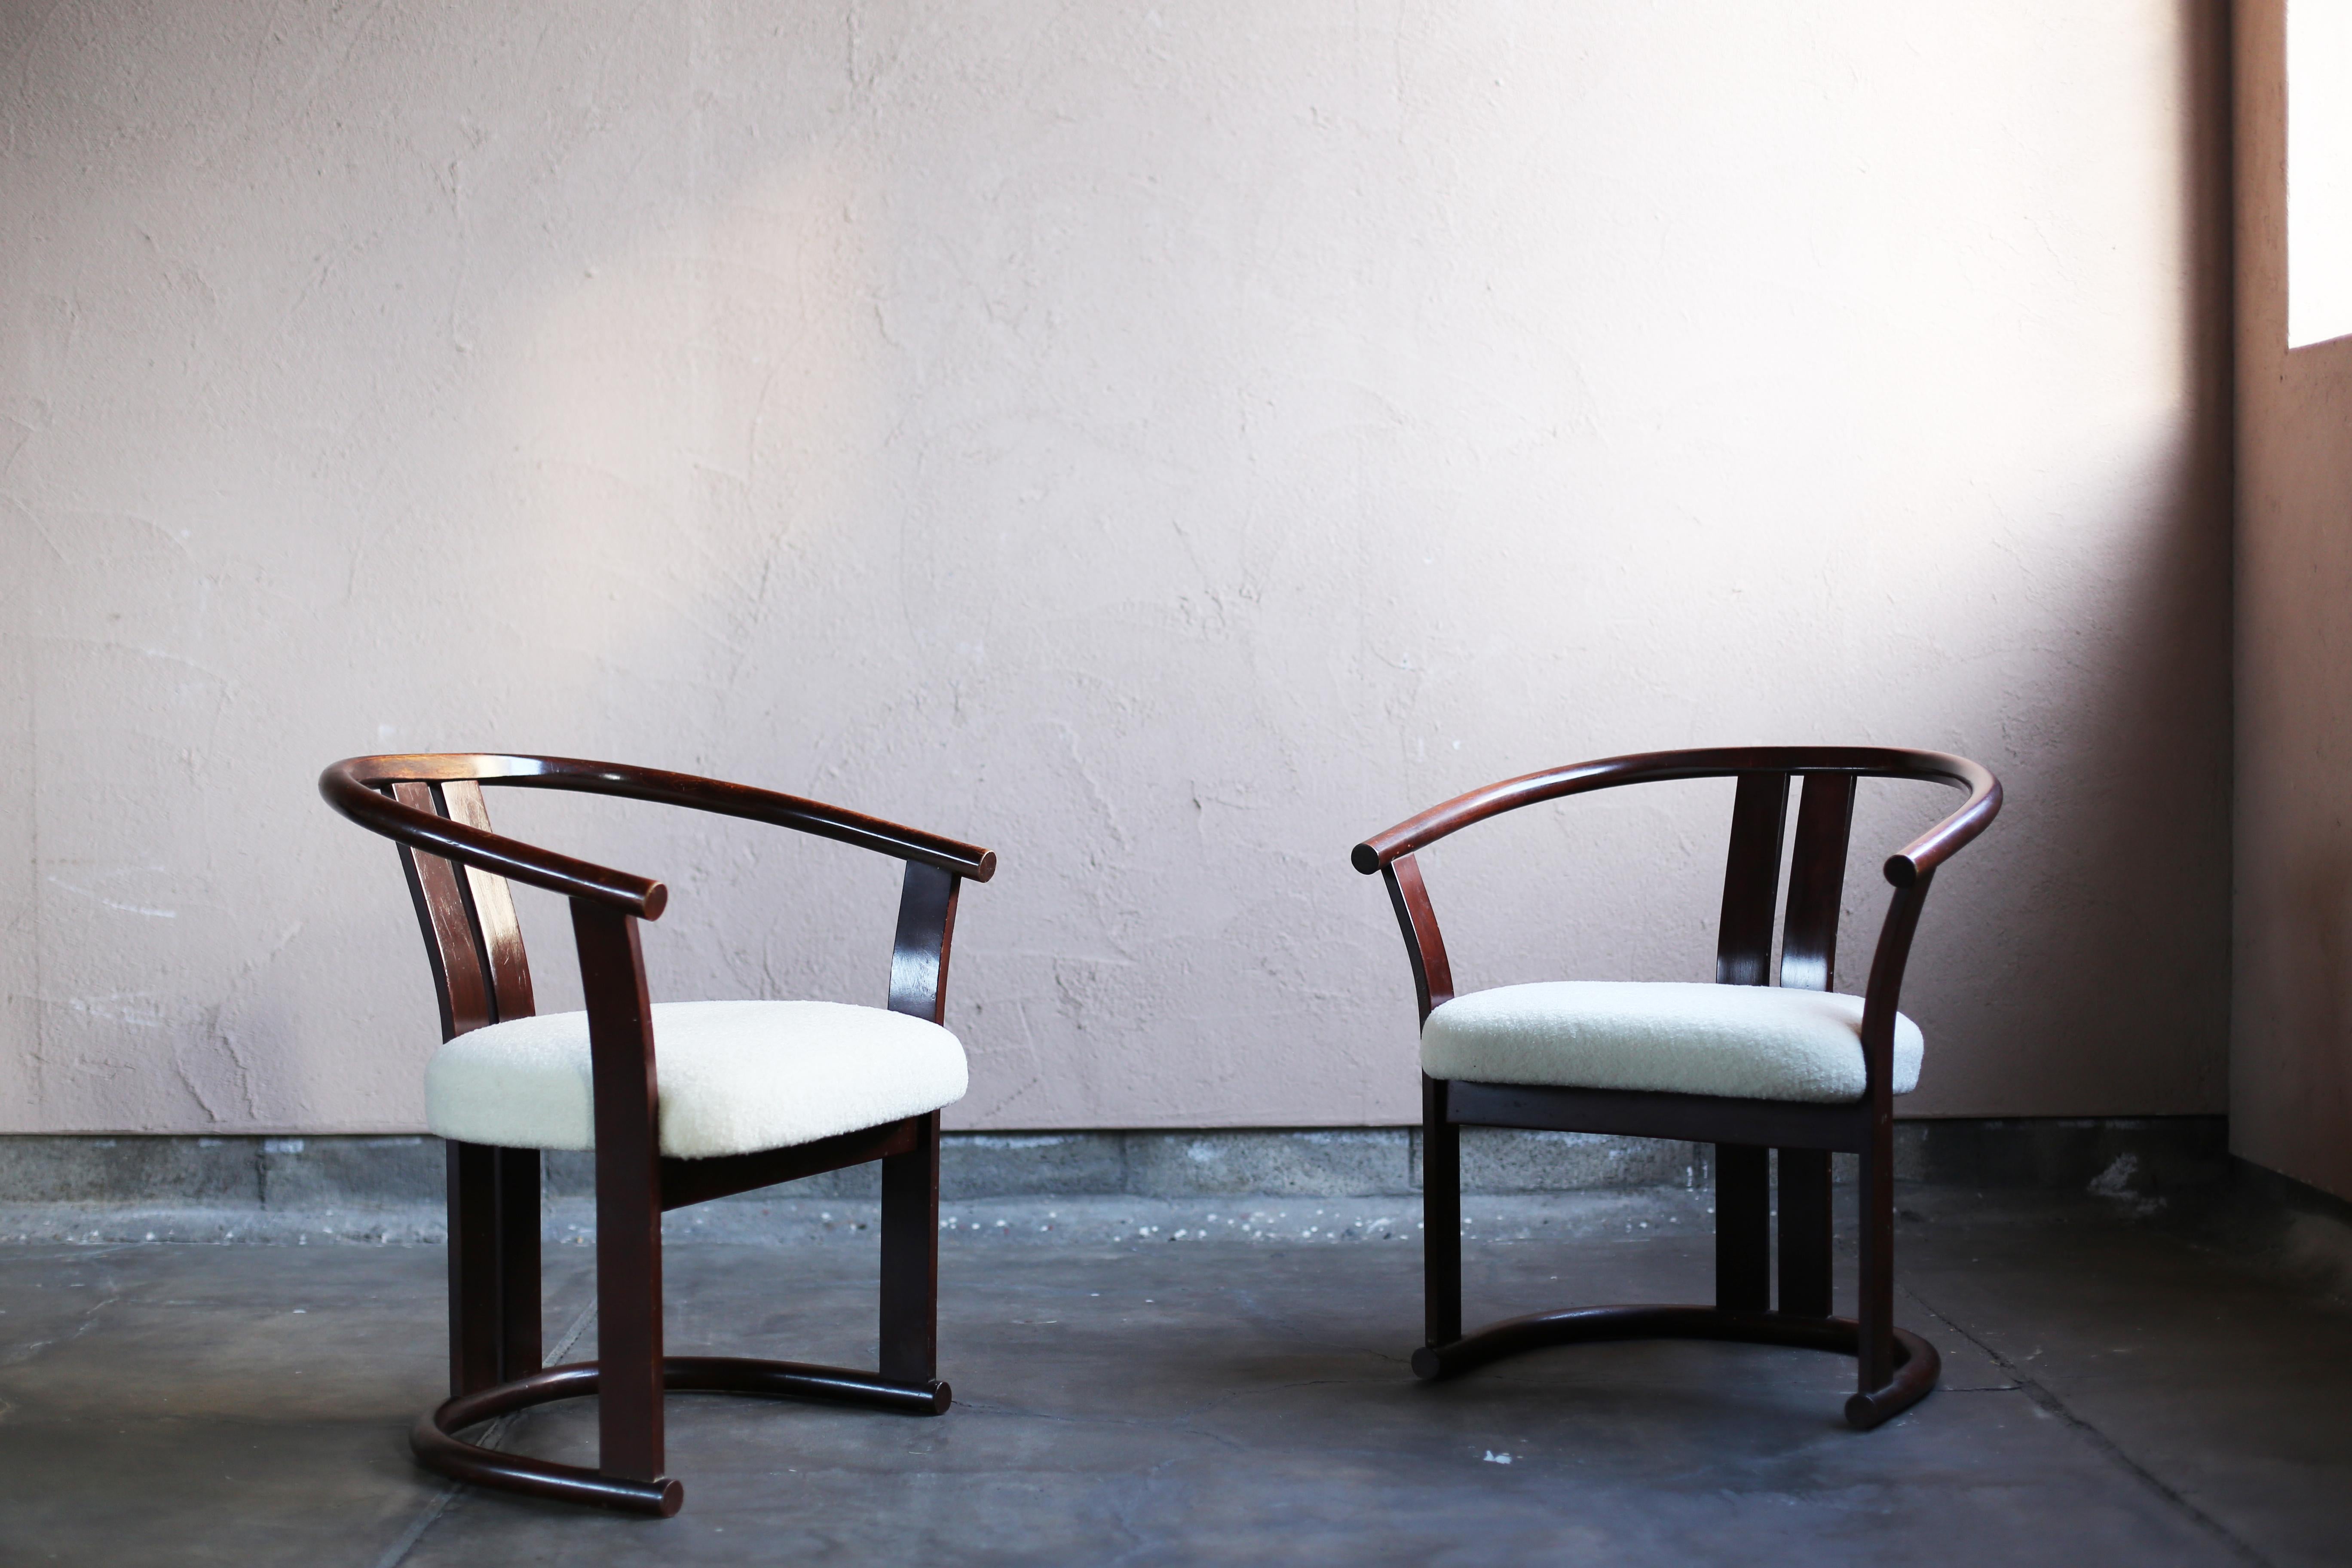 Diese Stühle wurden in den 60er und 70er Jahren von Isamu Kenmochi für Akita Mokkou entworfen. Die Originalaufkleber sind noch vorhanden.
Alle Rahmen sind aus gebogenem, massivem Buchenholz gefertigt.
Akita Mokkou ist seit über 100 Jahren Japans